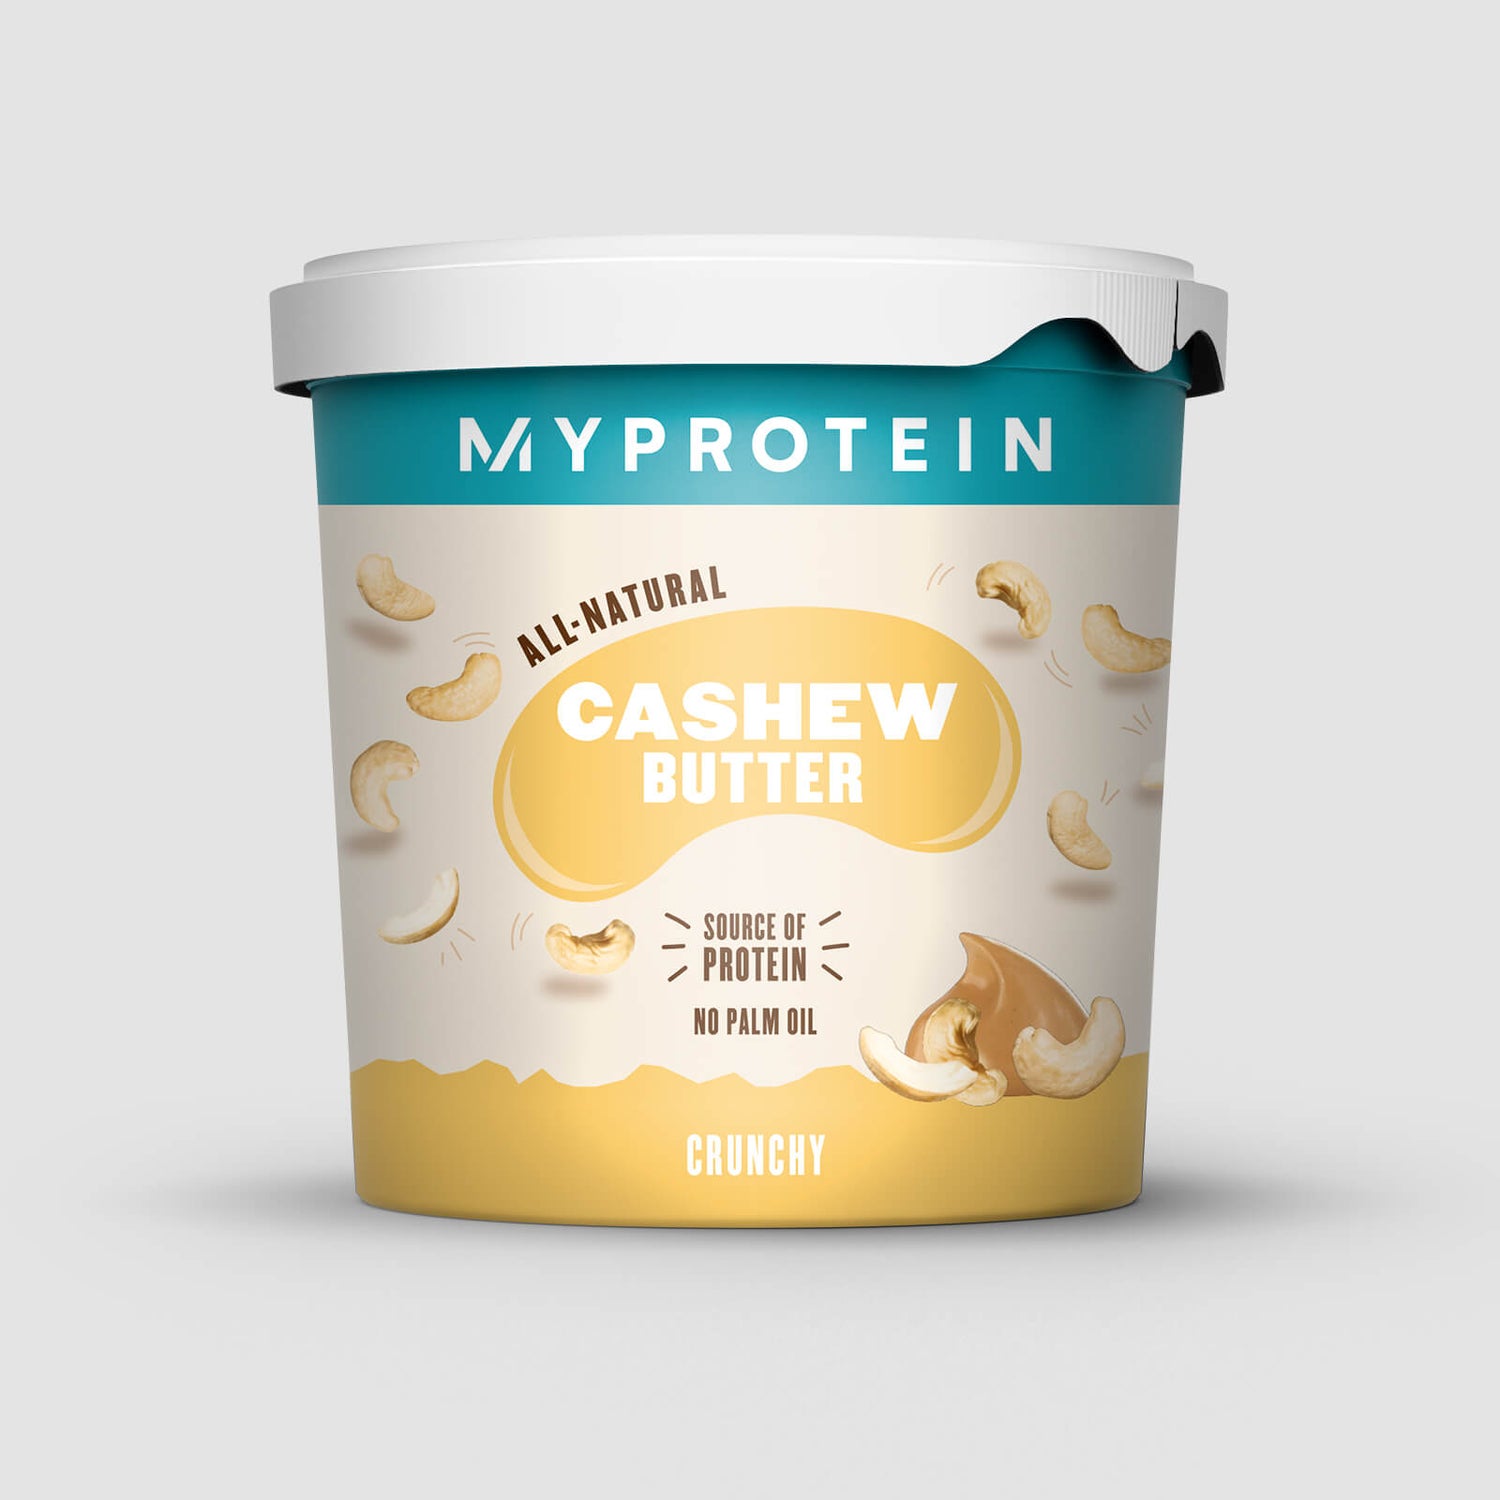 Myprotein Natural Cashew Butter